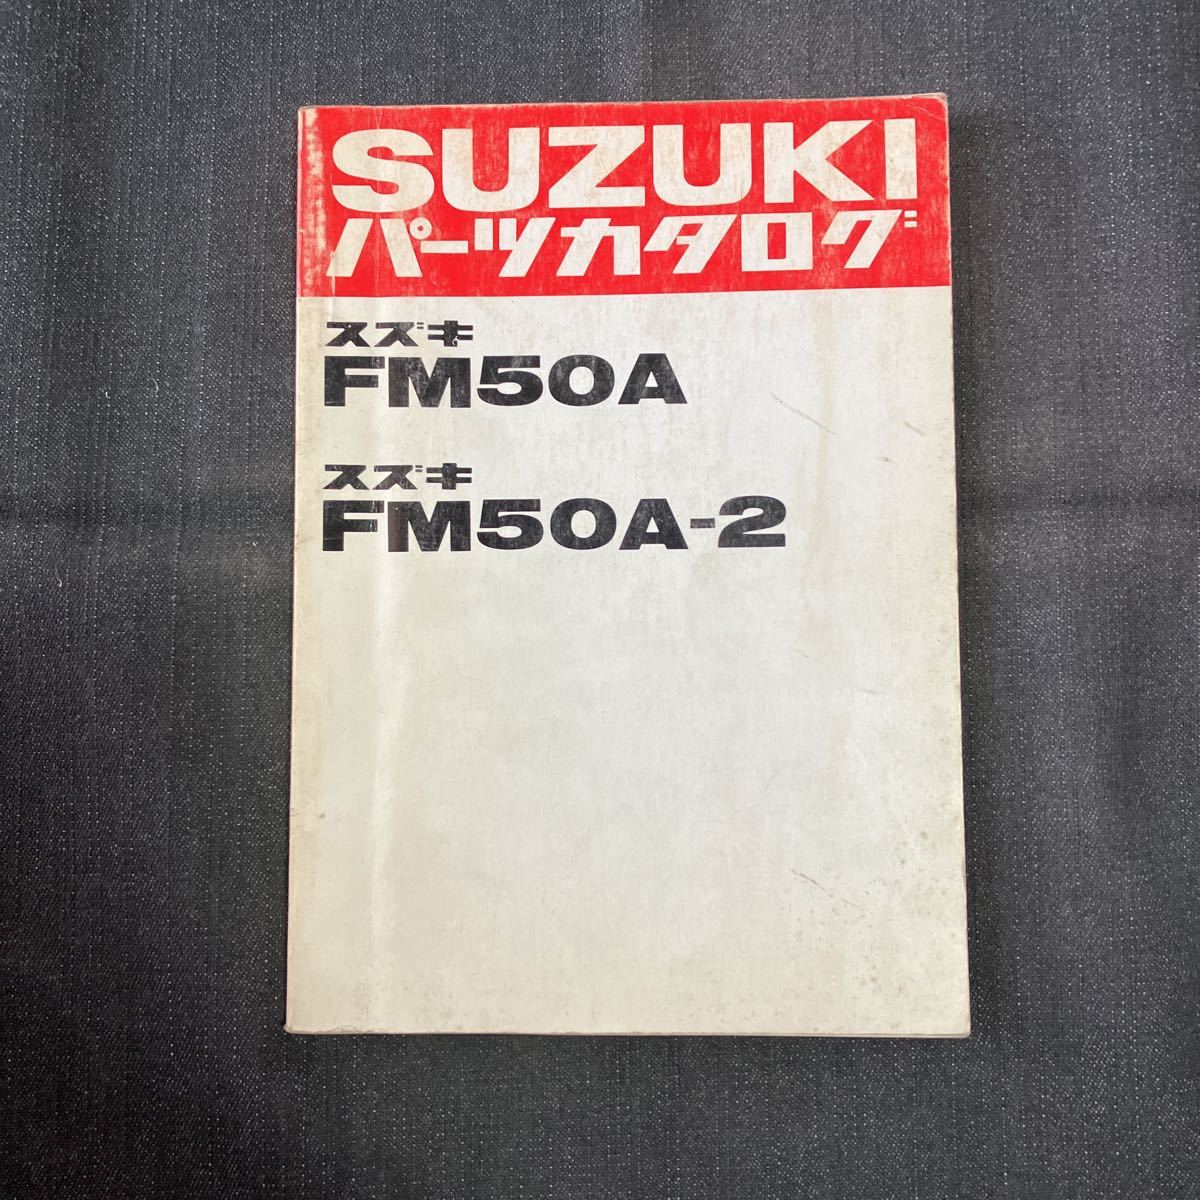 p082600 スズキ FM50A FM50A-2 パーツカタログ 1980年10月_画像1